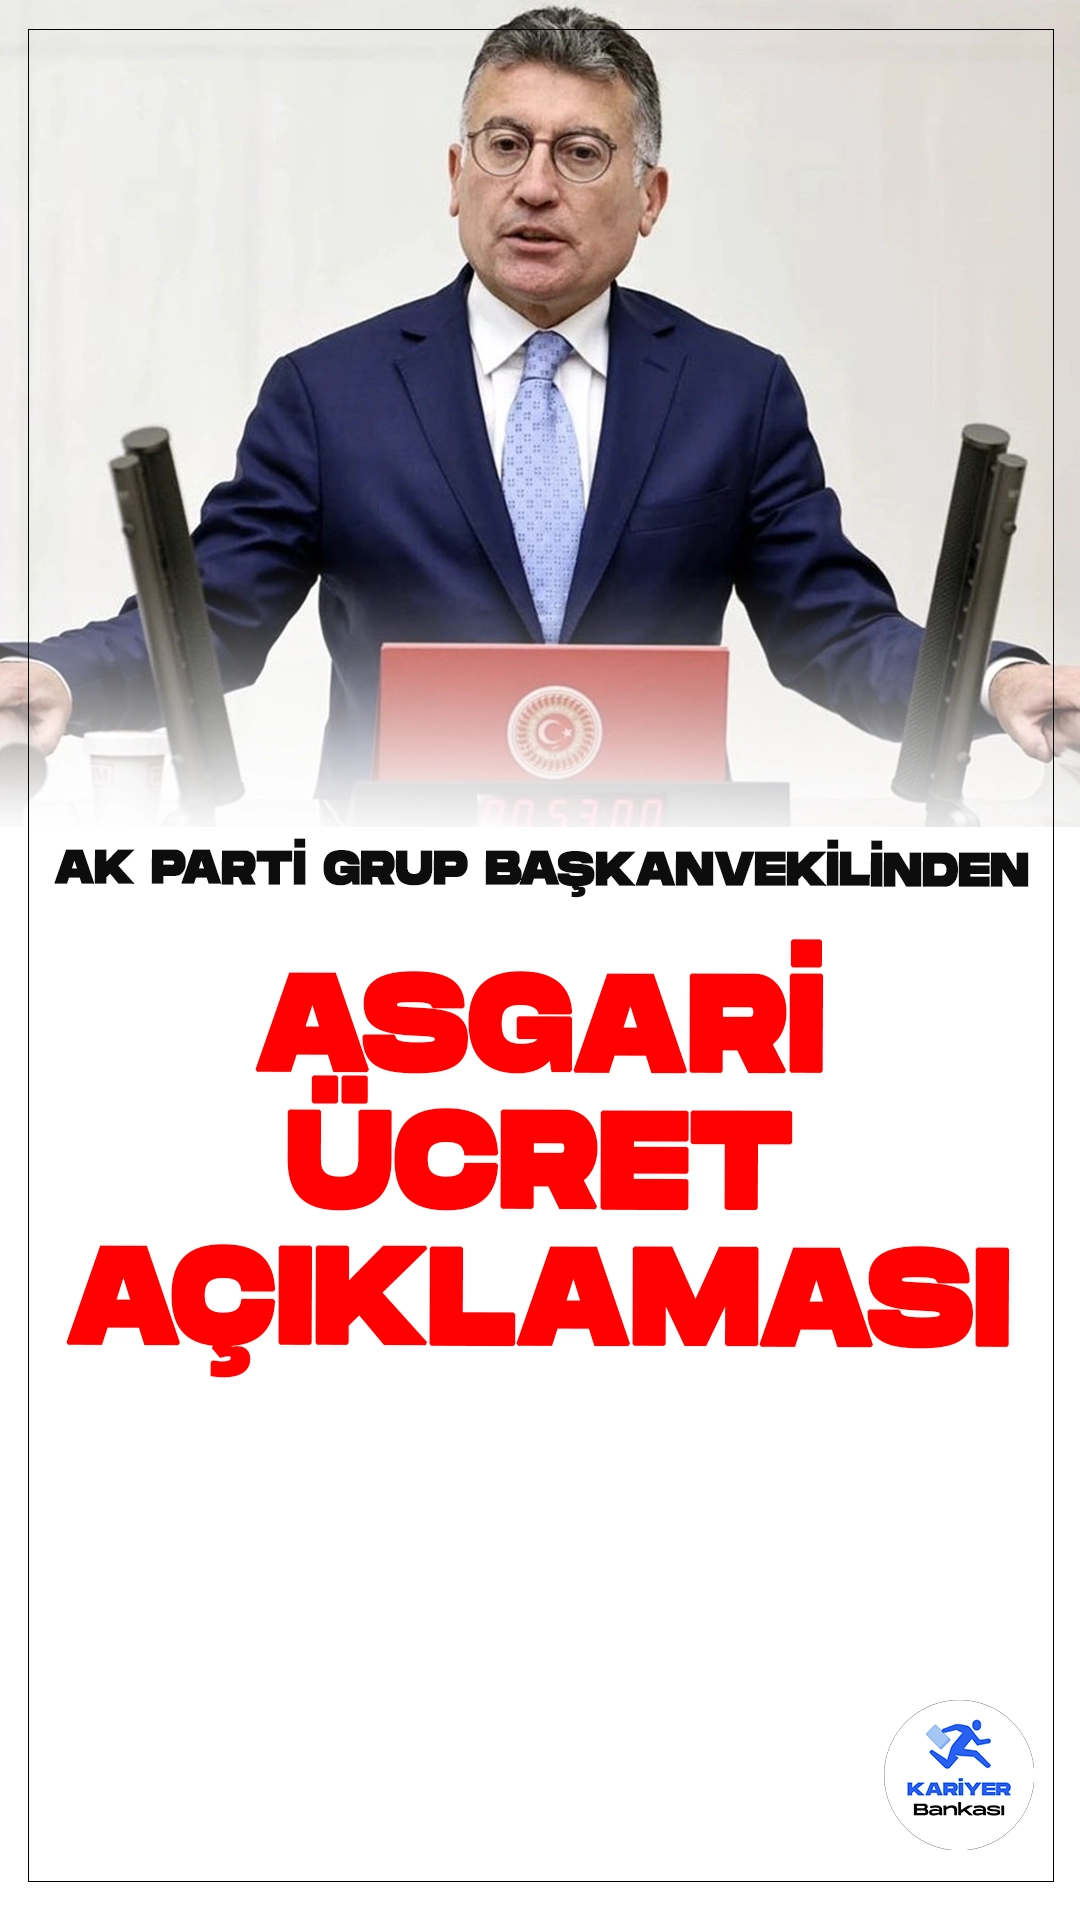 AK Parti Grup Başkanvekili Abdullah Güler'den Asgari Ücret Açıklaması.AK Parti Grup Başkanvekili Abdullah Güler, asgari ücret konusunda önemli açıklamalarda bulundu. Güler, "Asgari ücrete ara zam yapılmayacak." diyerek vatandaşları bu konuda beklentiye girmemeleri konusunda uyardı.